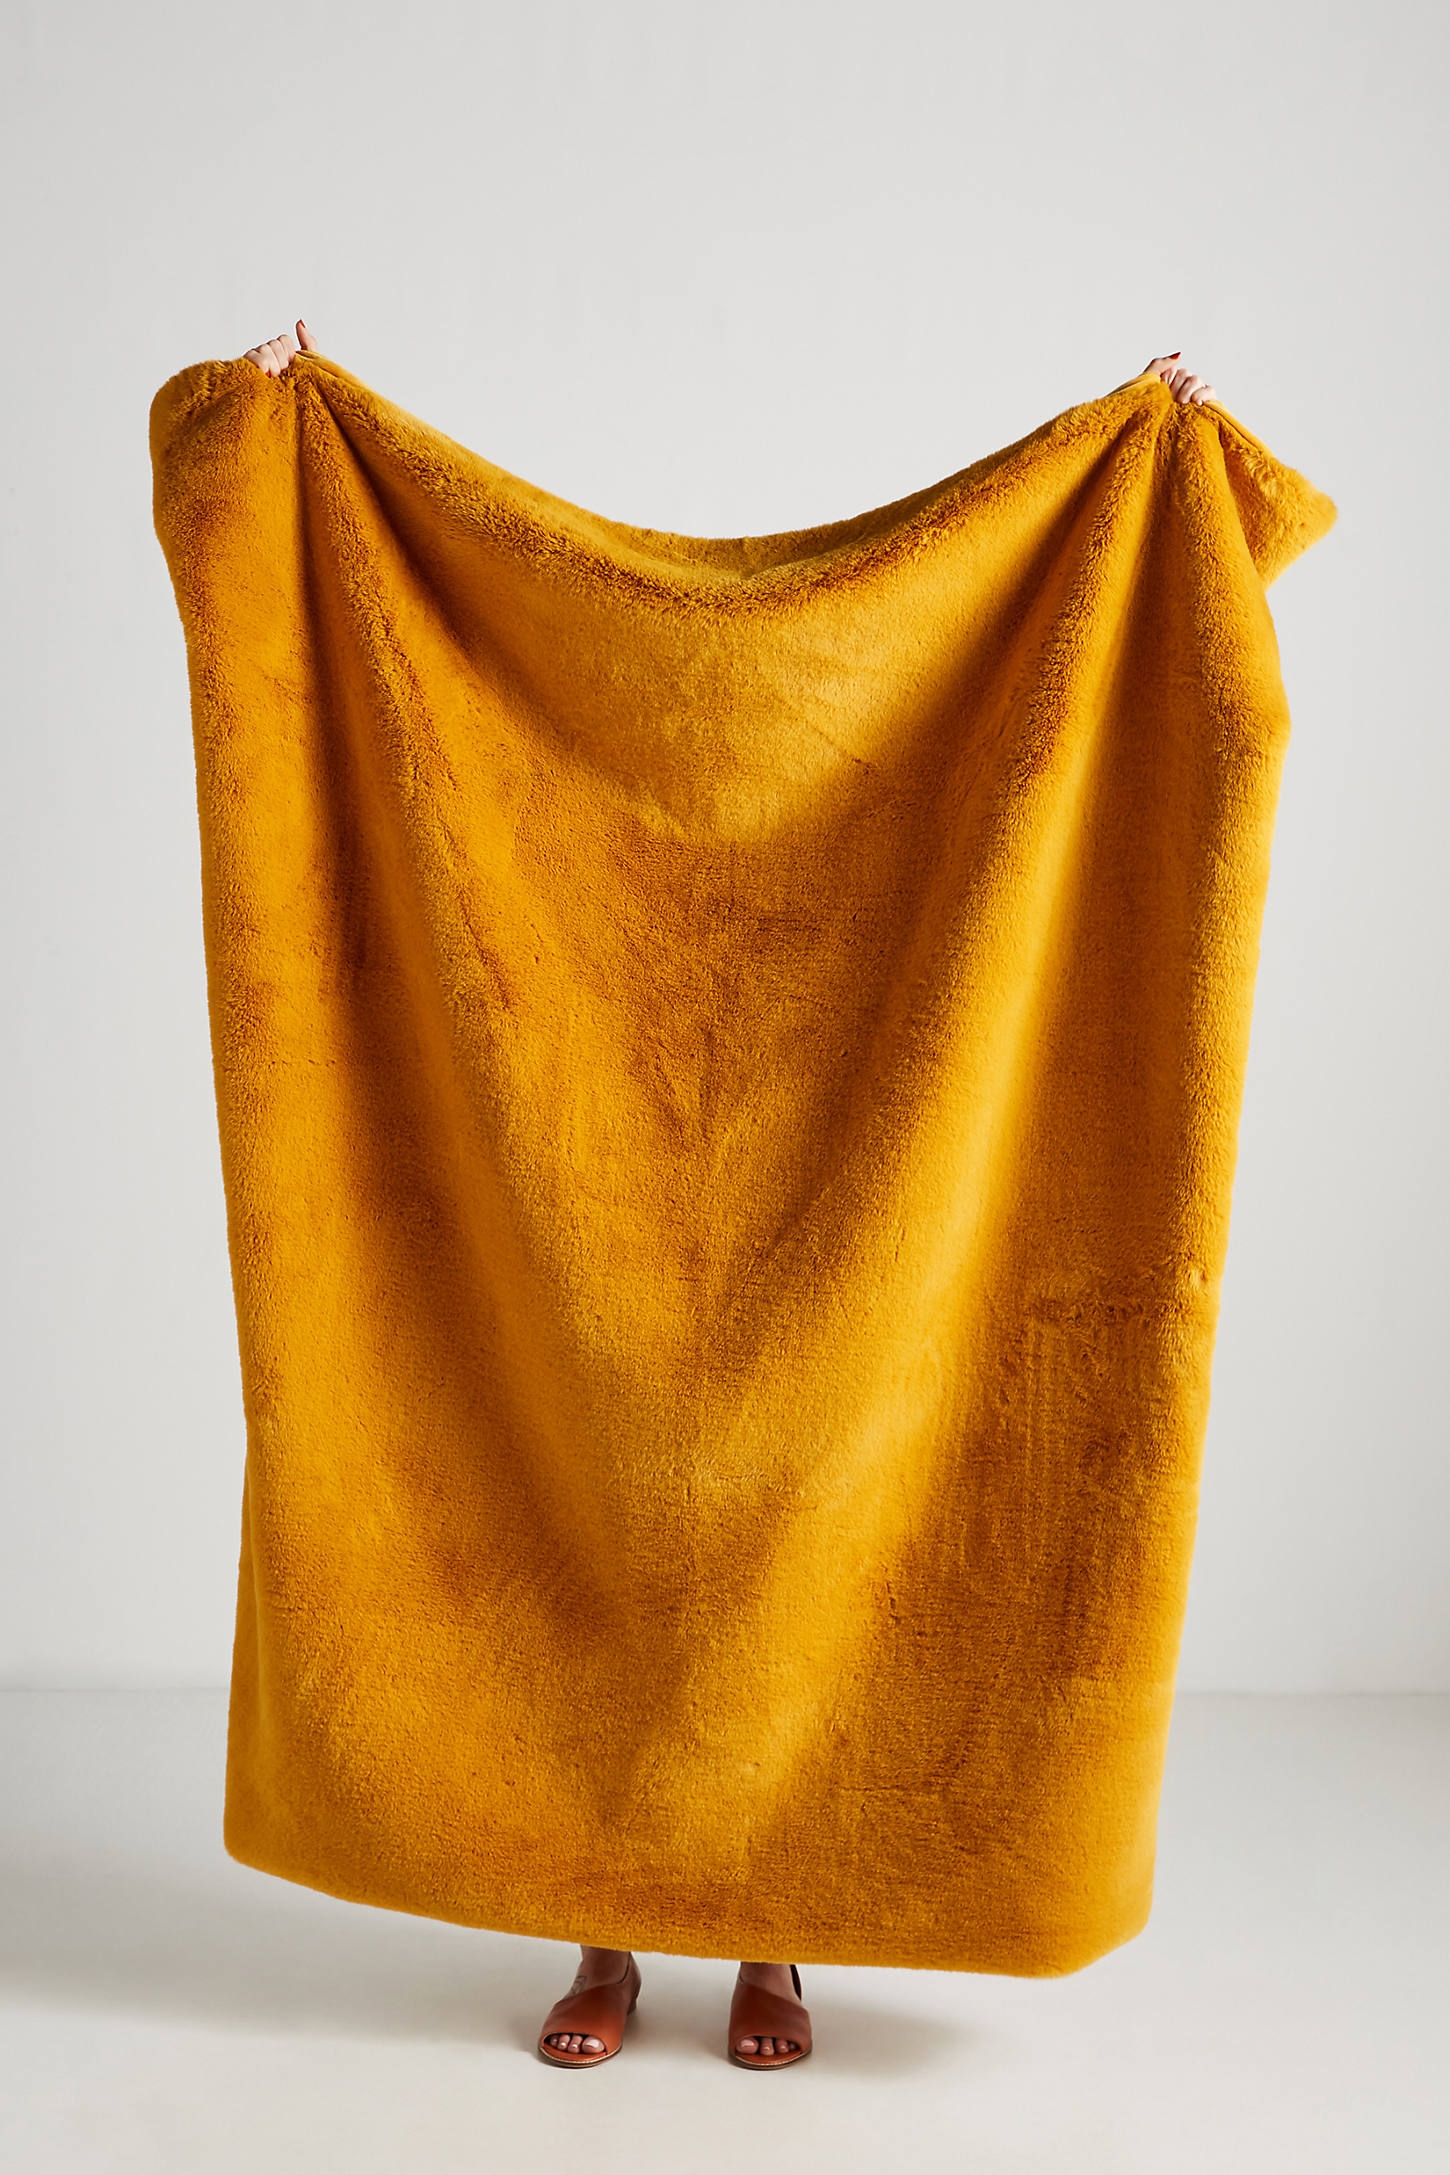 Sophie Faux Fur Throw Blanket - Image 0